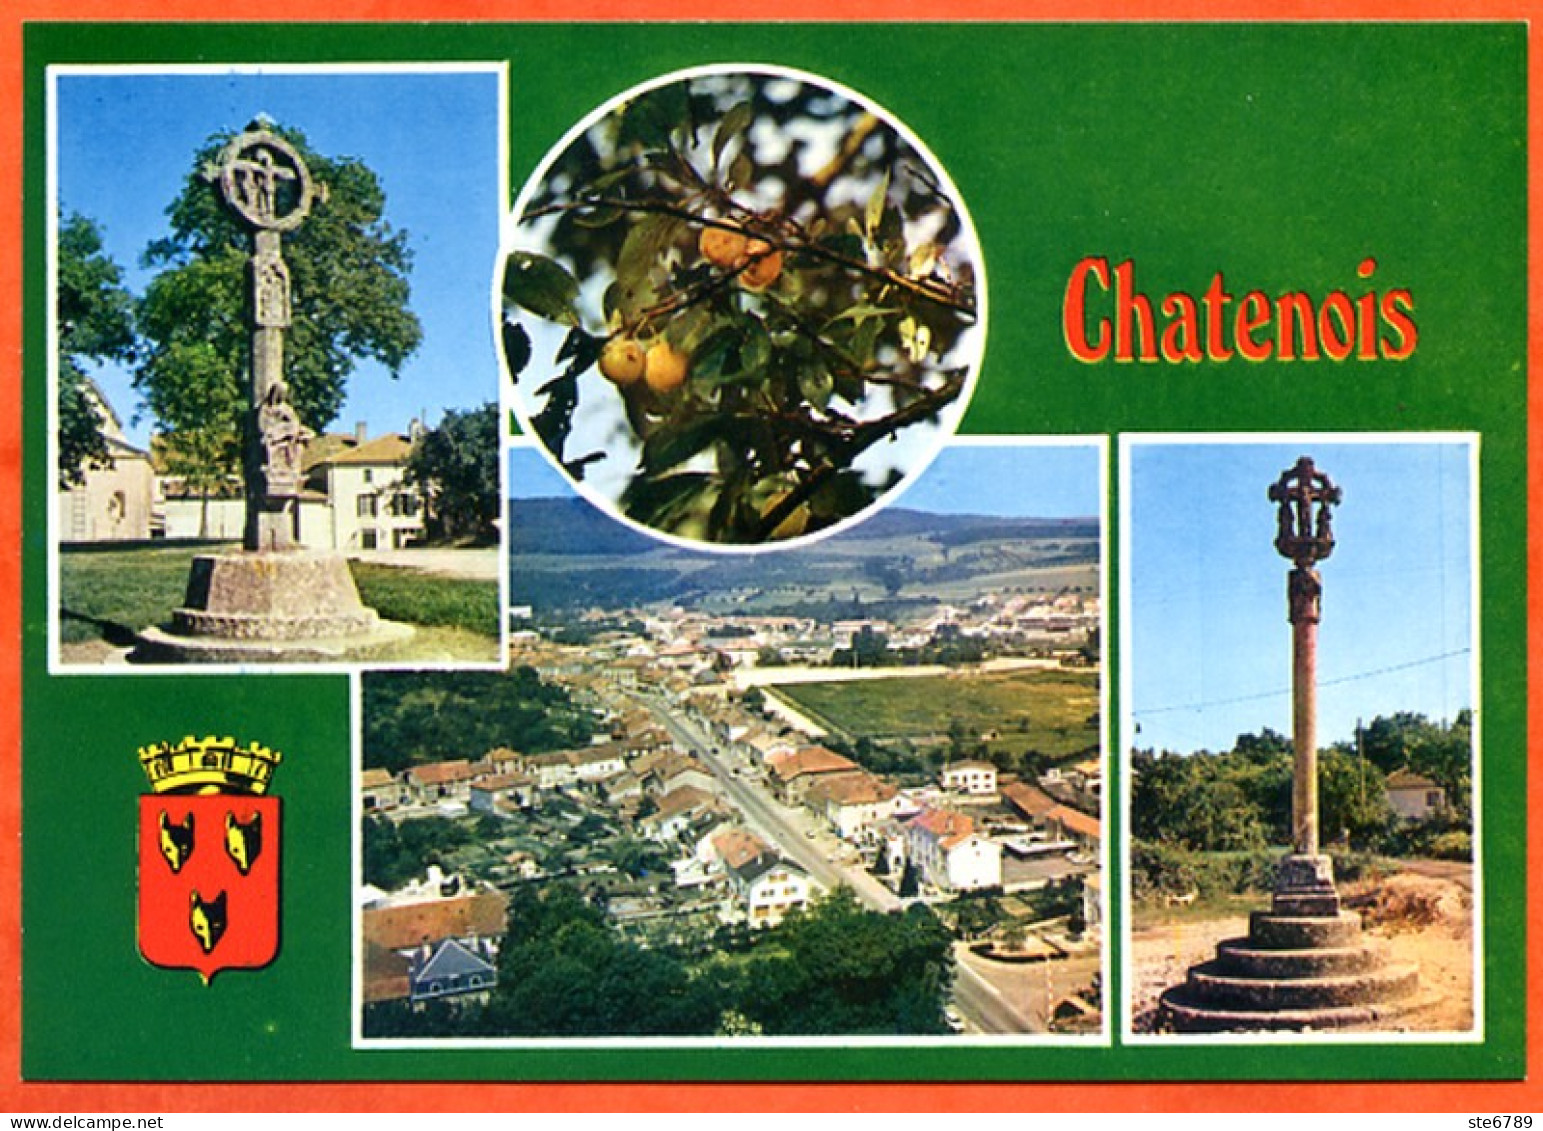 88 CHATENOIS  Multivues Blason Vue Aérienne Croix  CIM Carte Vierge TBE - Chatenois